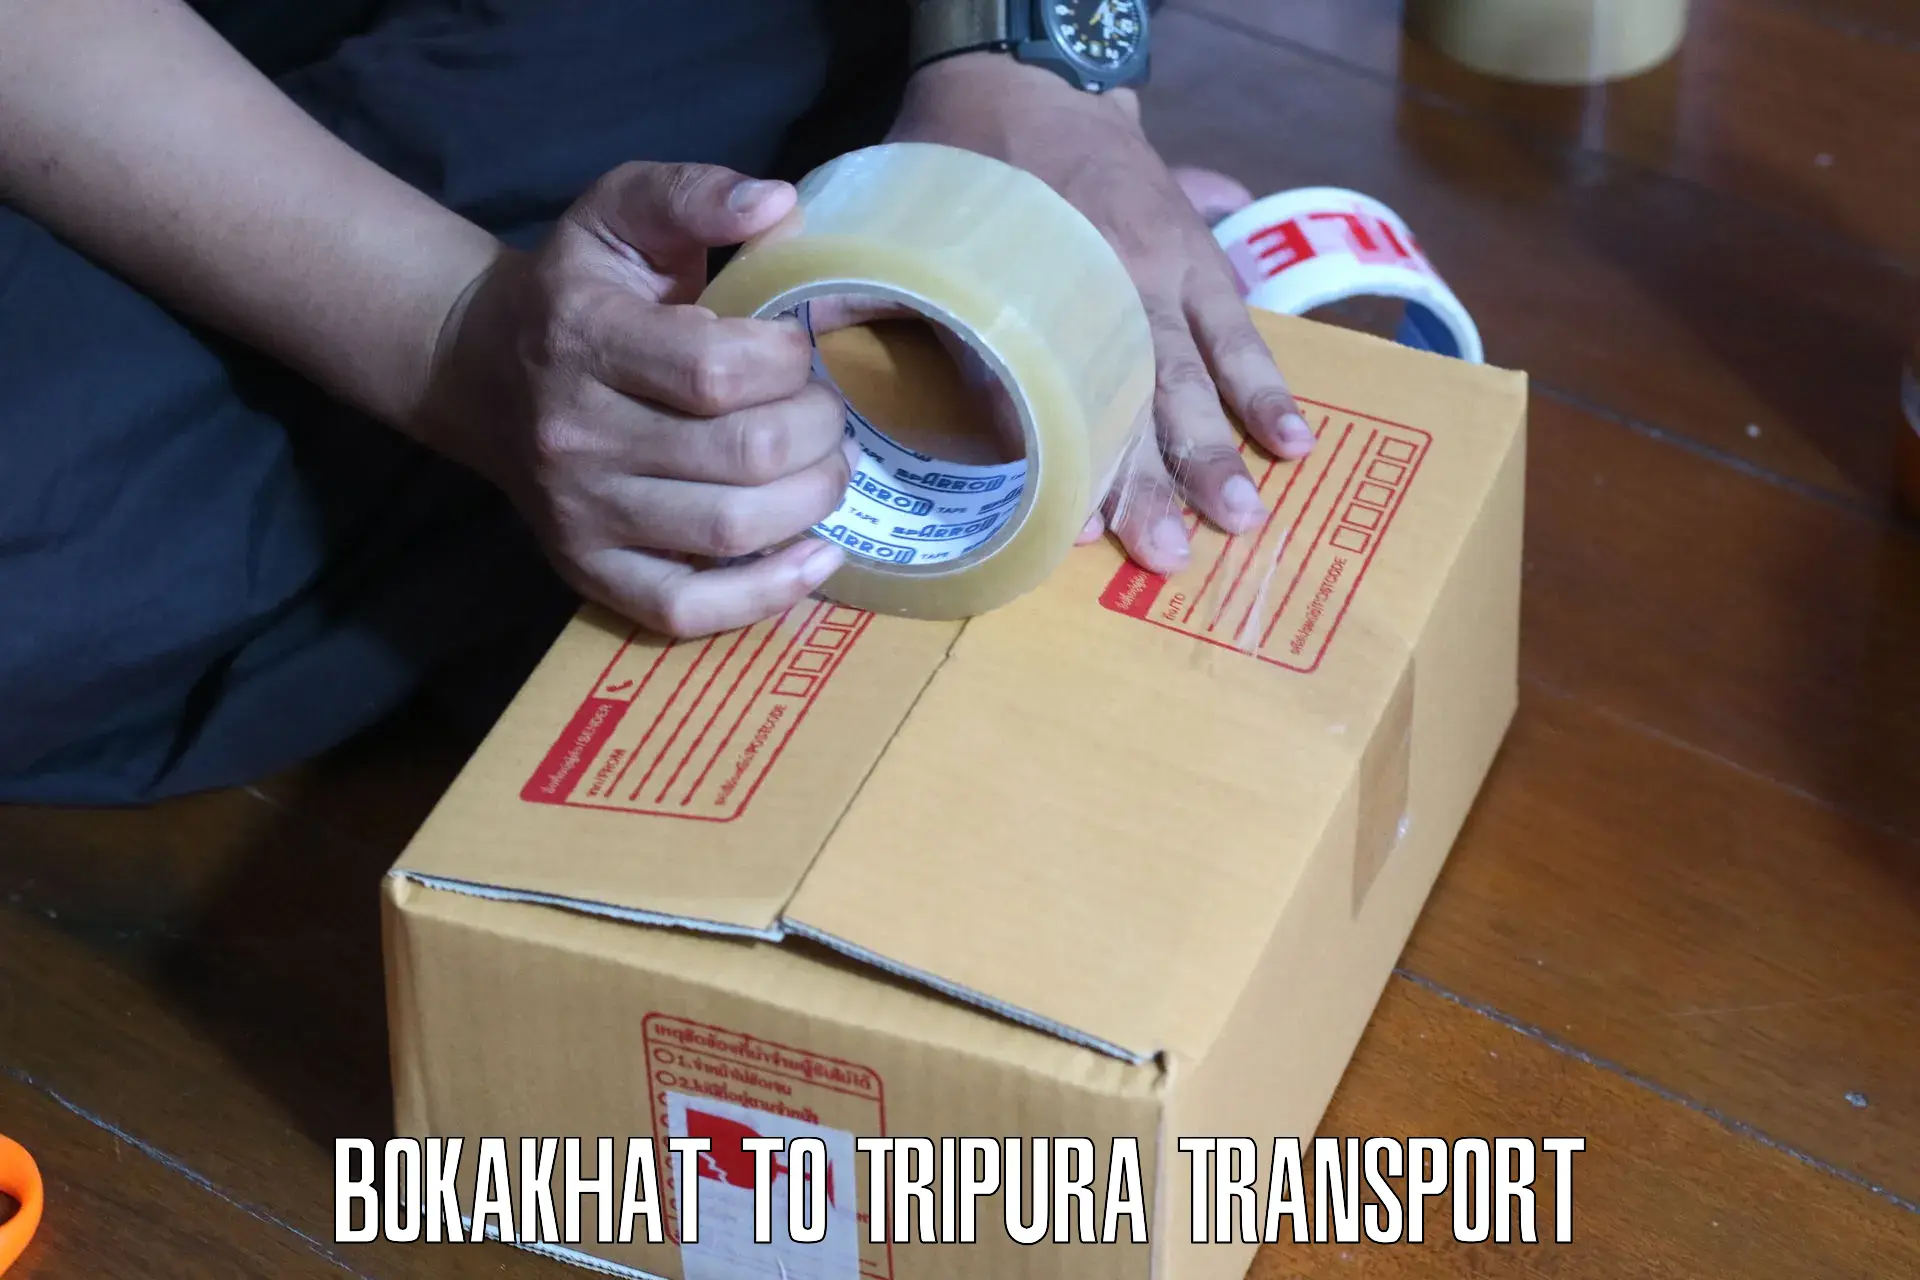 Goods transport services Bokakhat to Sonamura